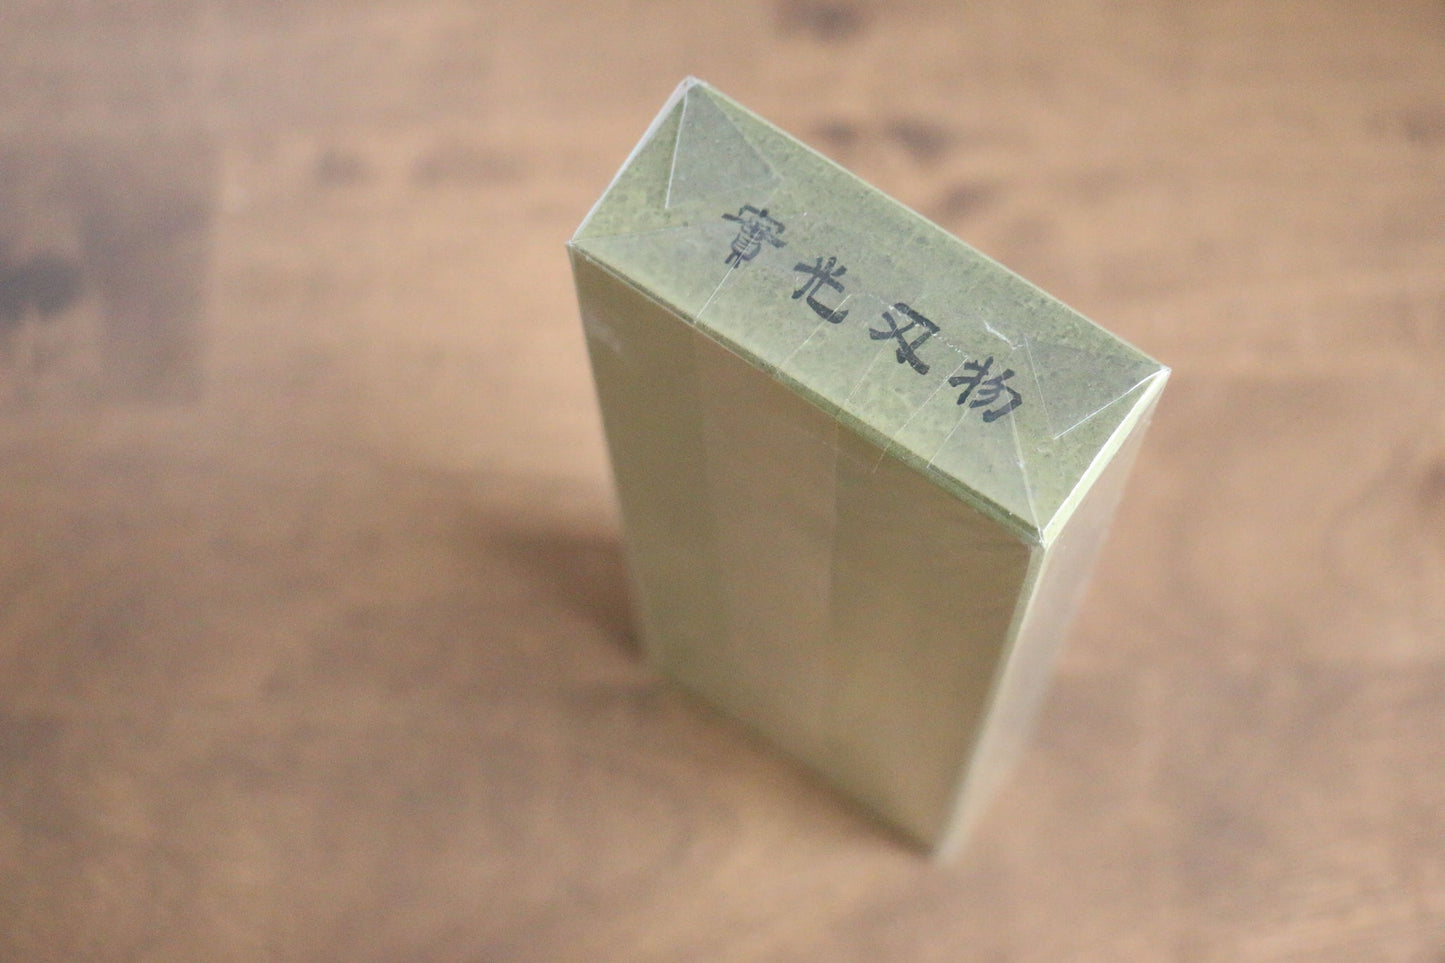 Feiner Schleifstein der Marke Jikko Ceramic mit Körnung Nr. 3000 – Specialized Messer-Schleifstein, Gewicht 690 Gramm